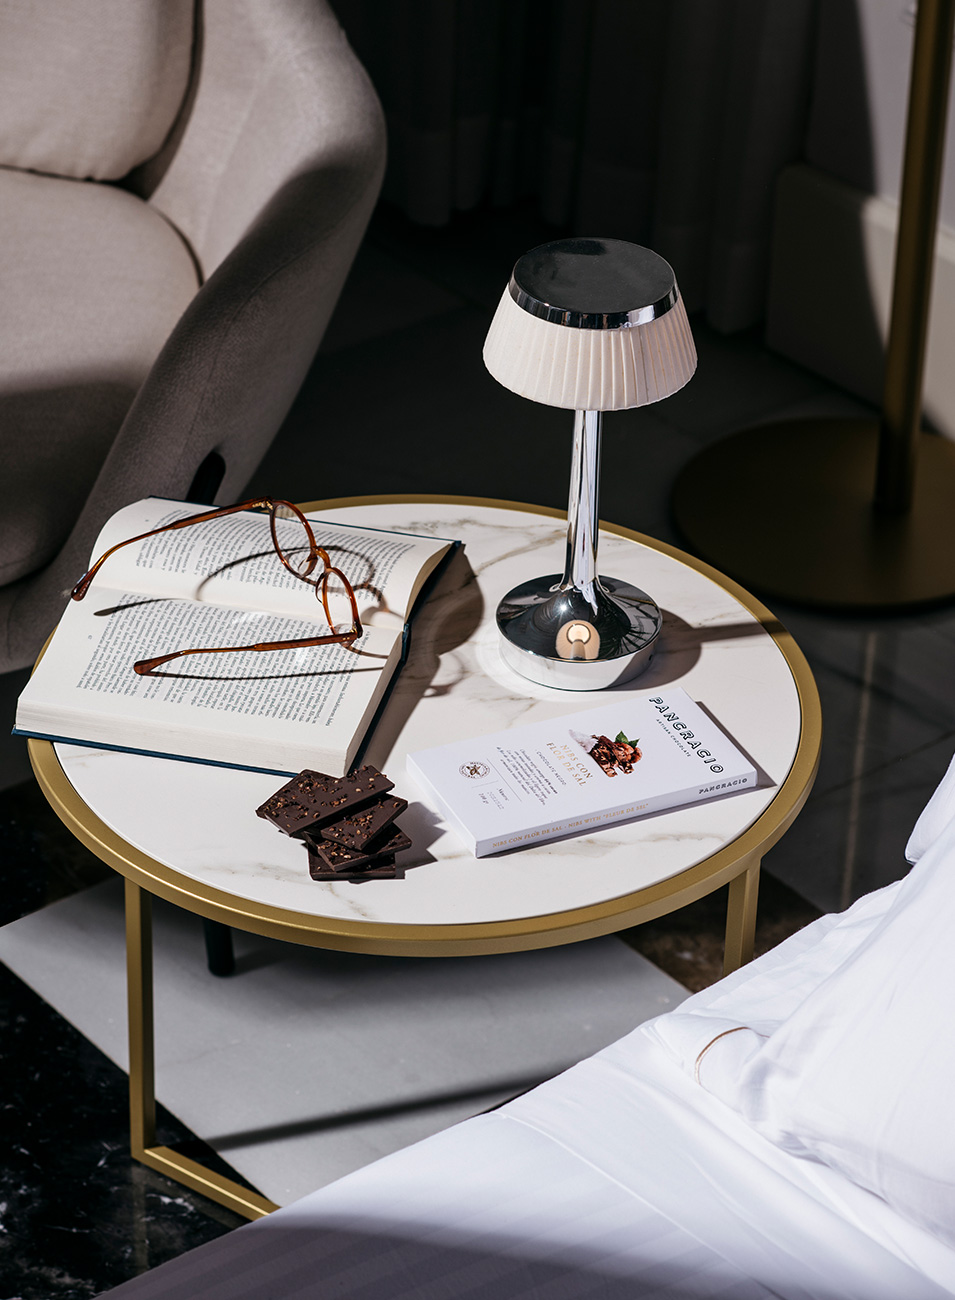 Una mesita baja de salón con una lámpara, unas gafas de leer sobre un libro abierto y una tableta de chocolate con trozos fuera